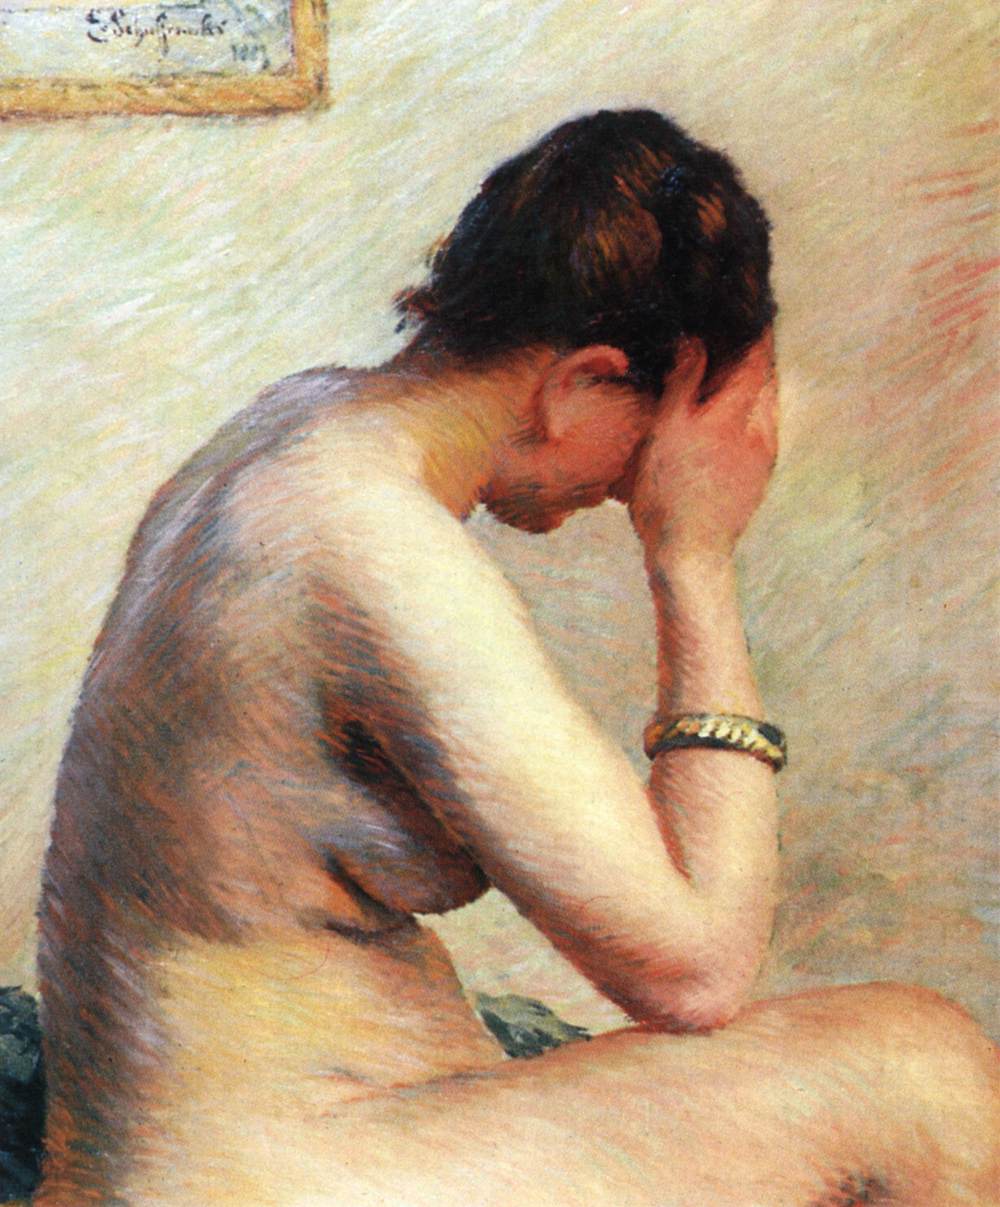 Femme nue assise dans un lit